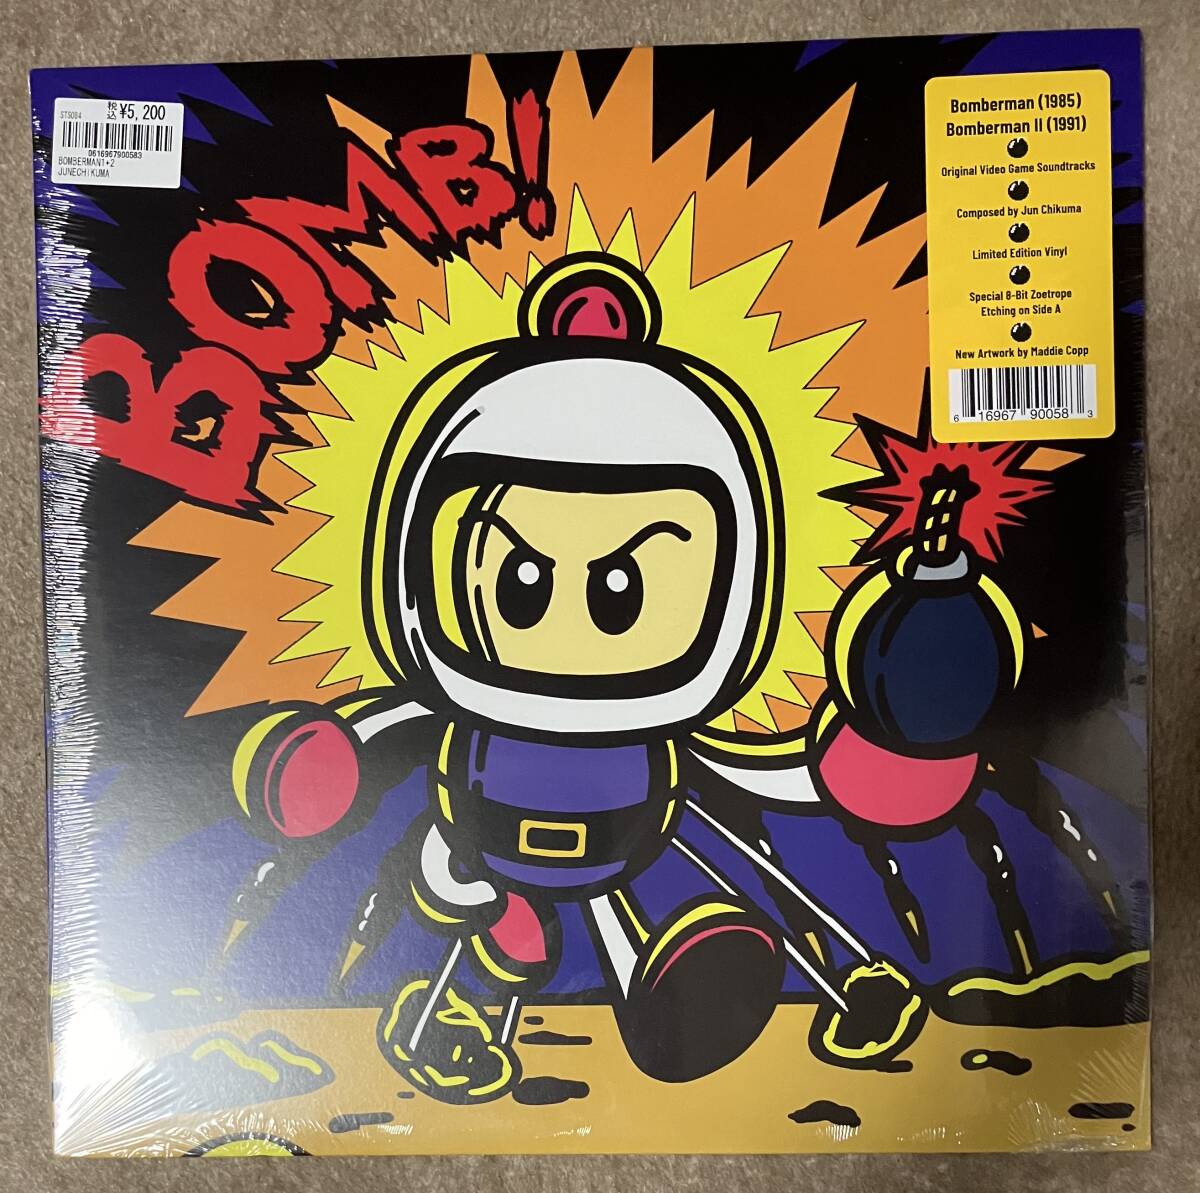 ボンバーマン1&2 オリジナルサウンドトラック LP レコード BOMBERMAN 1 + 2_画像1